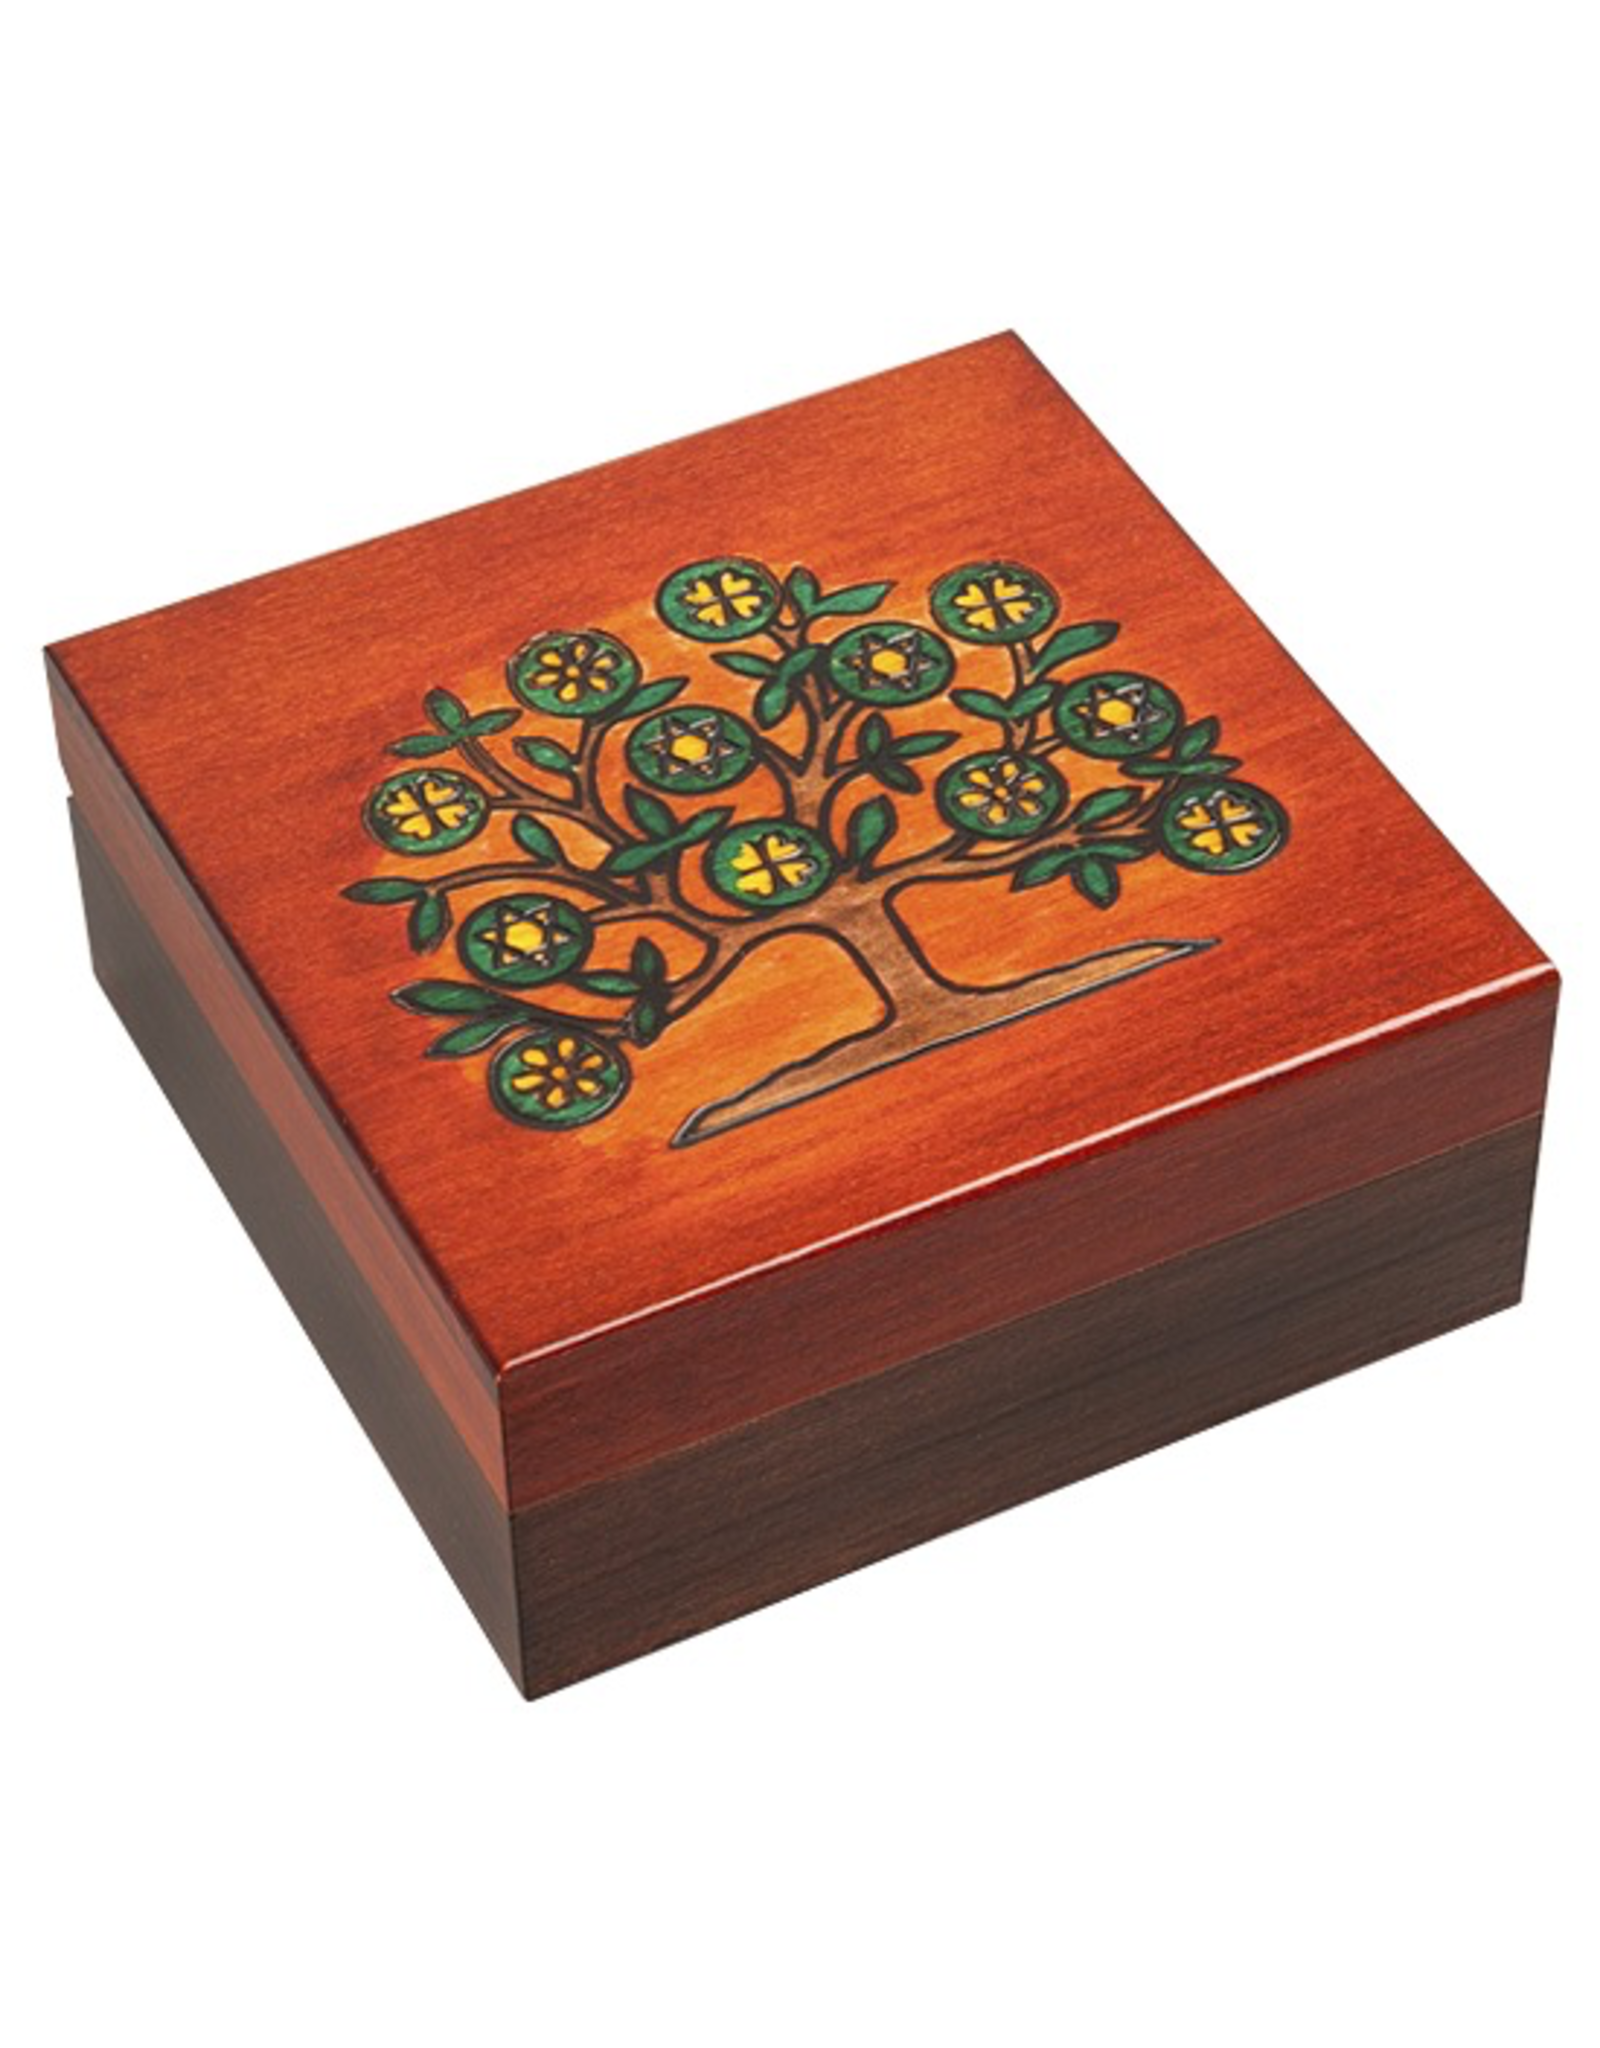 Enchanted Boxes Tree of Life Wood Box